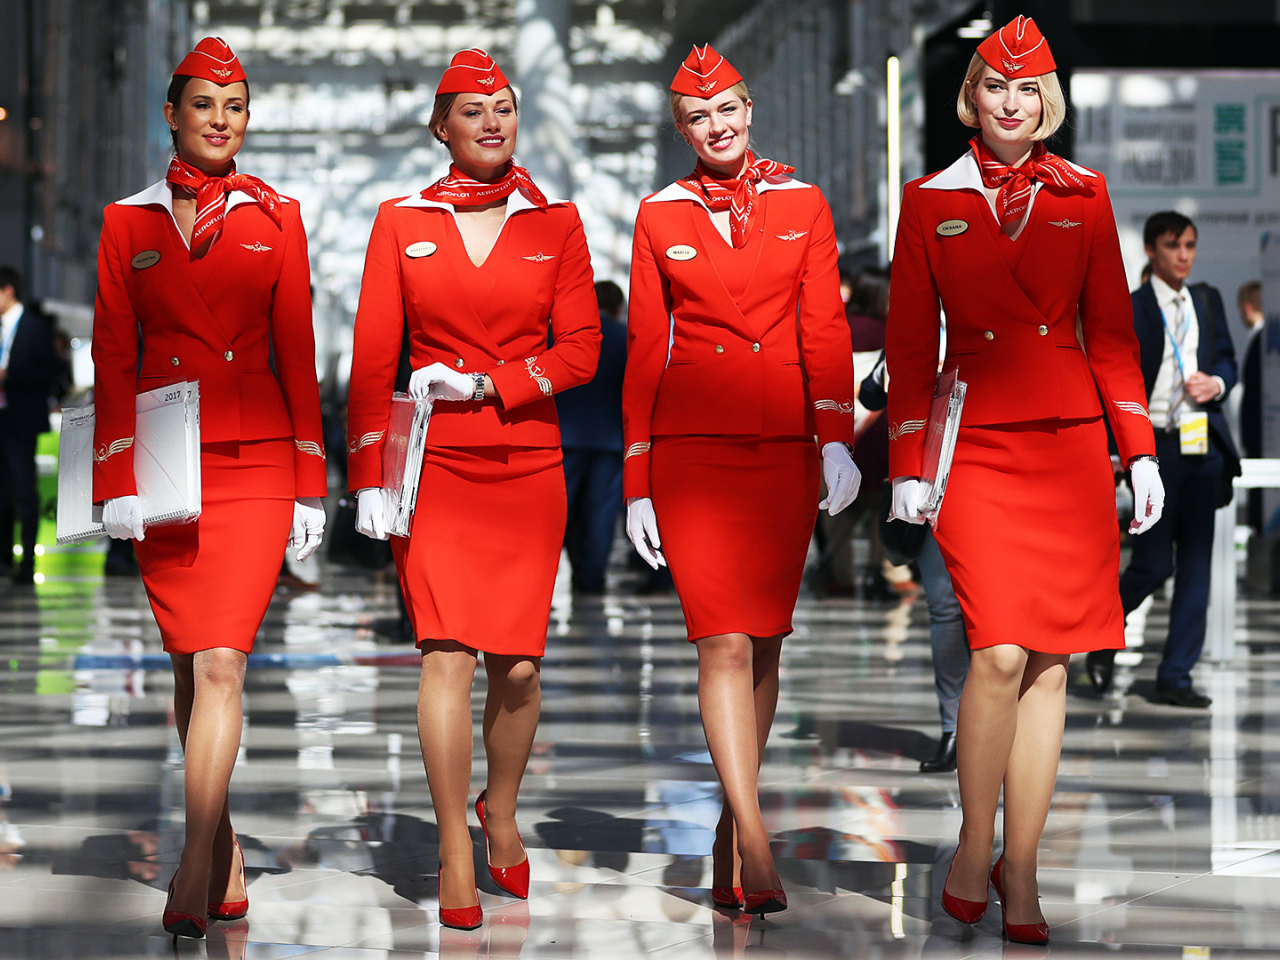 четыре девушки, стюардессы, красная форма, грудь, ножки, шикарная фигура, девушки в пилотке, красивые стюардессы, стюардессы россии